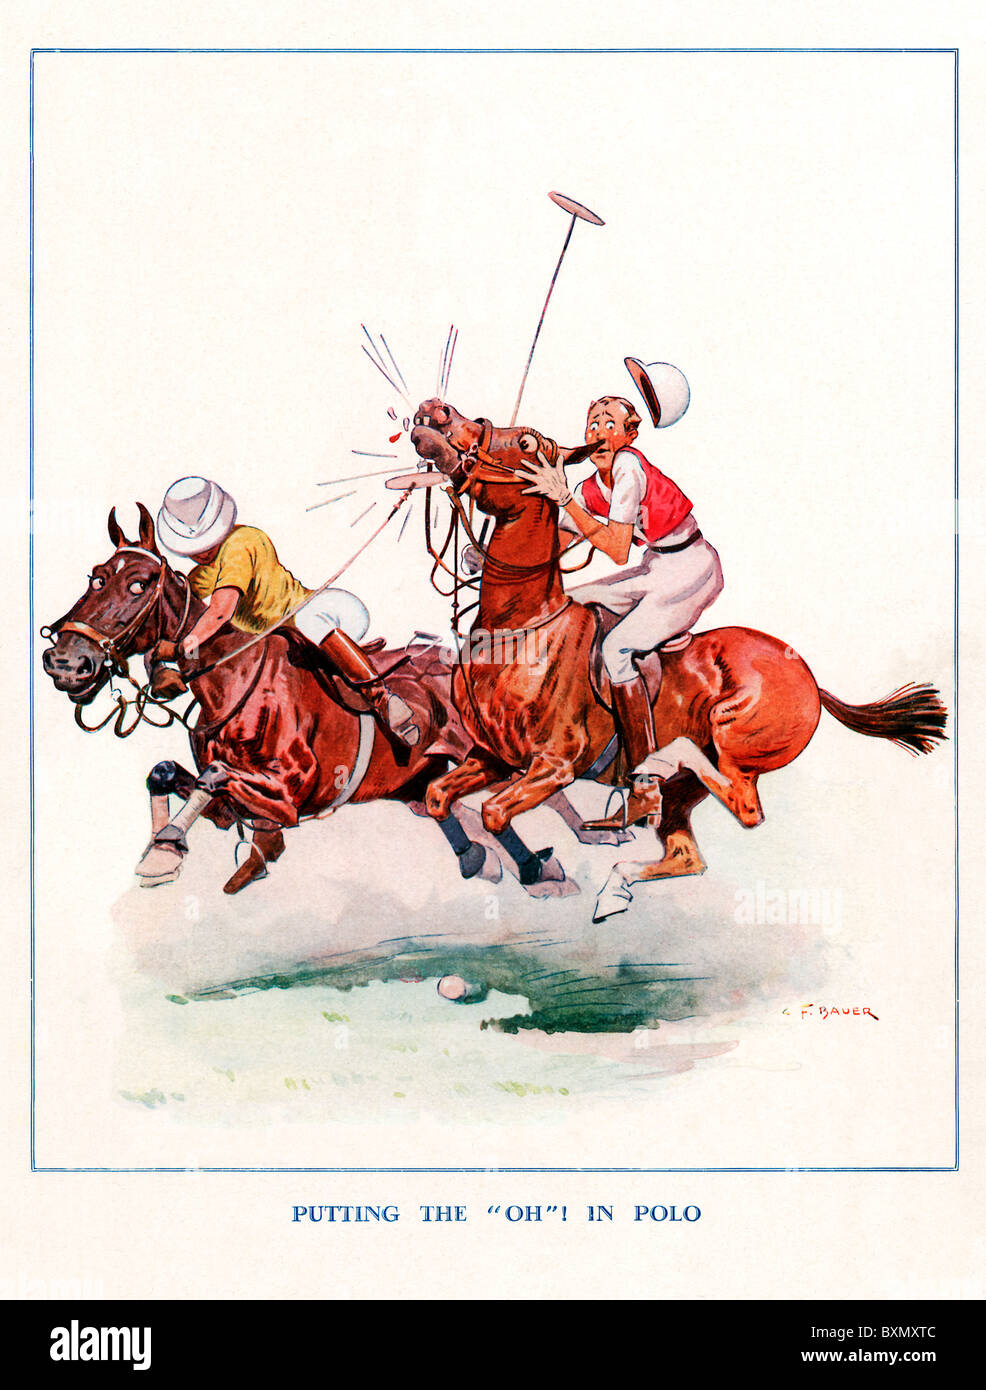 Mettre le 'Oh' dans le Polo, 1930 Dessin animé sur les dangers pour les pauvres de l'Equestrian horse ball jeu sport Banque D'Images